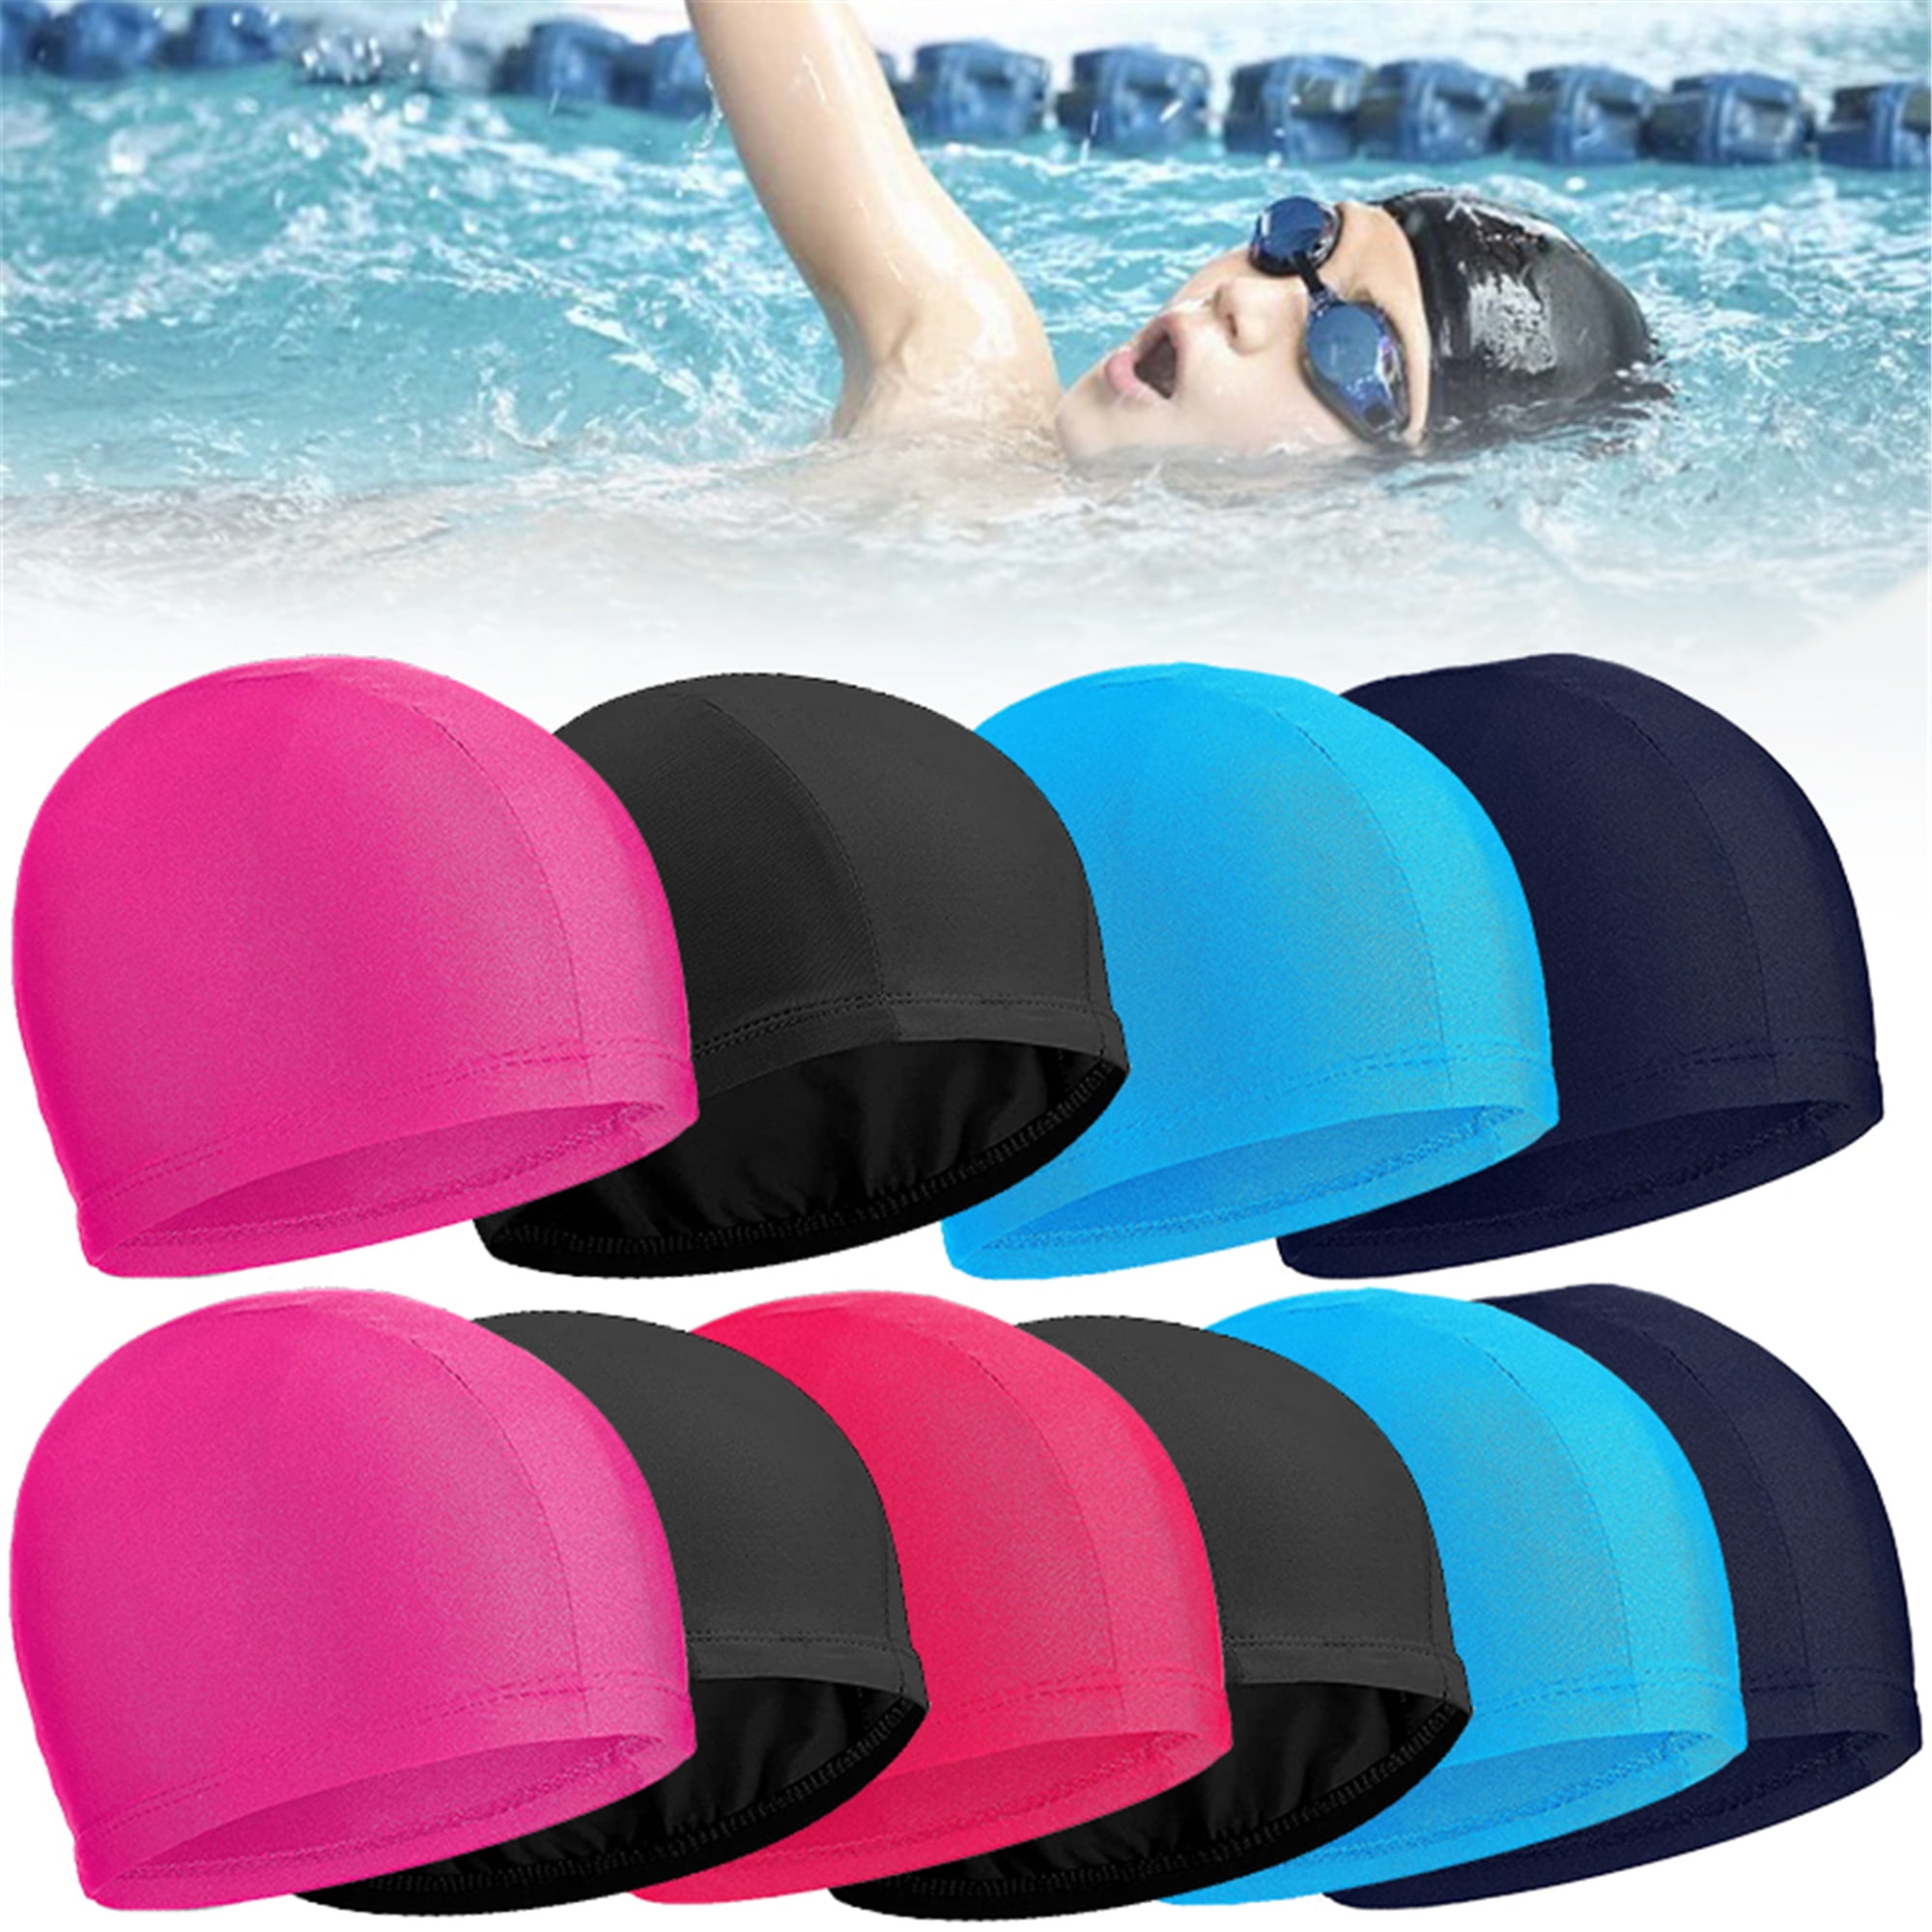 Unisex Adult & Kids Children Swimming Hat Shower Swim Pool Cap Elastic 14 Colors 